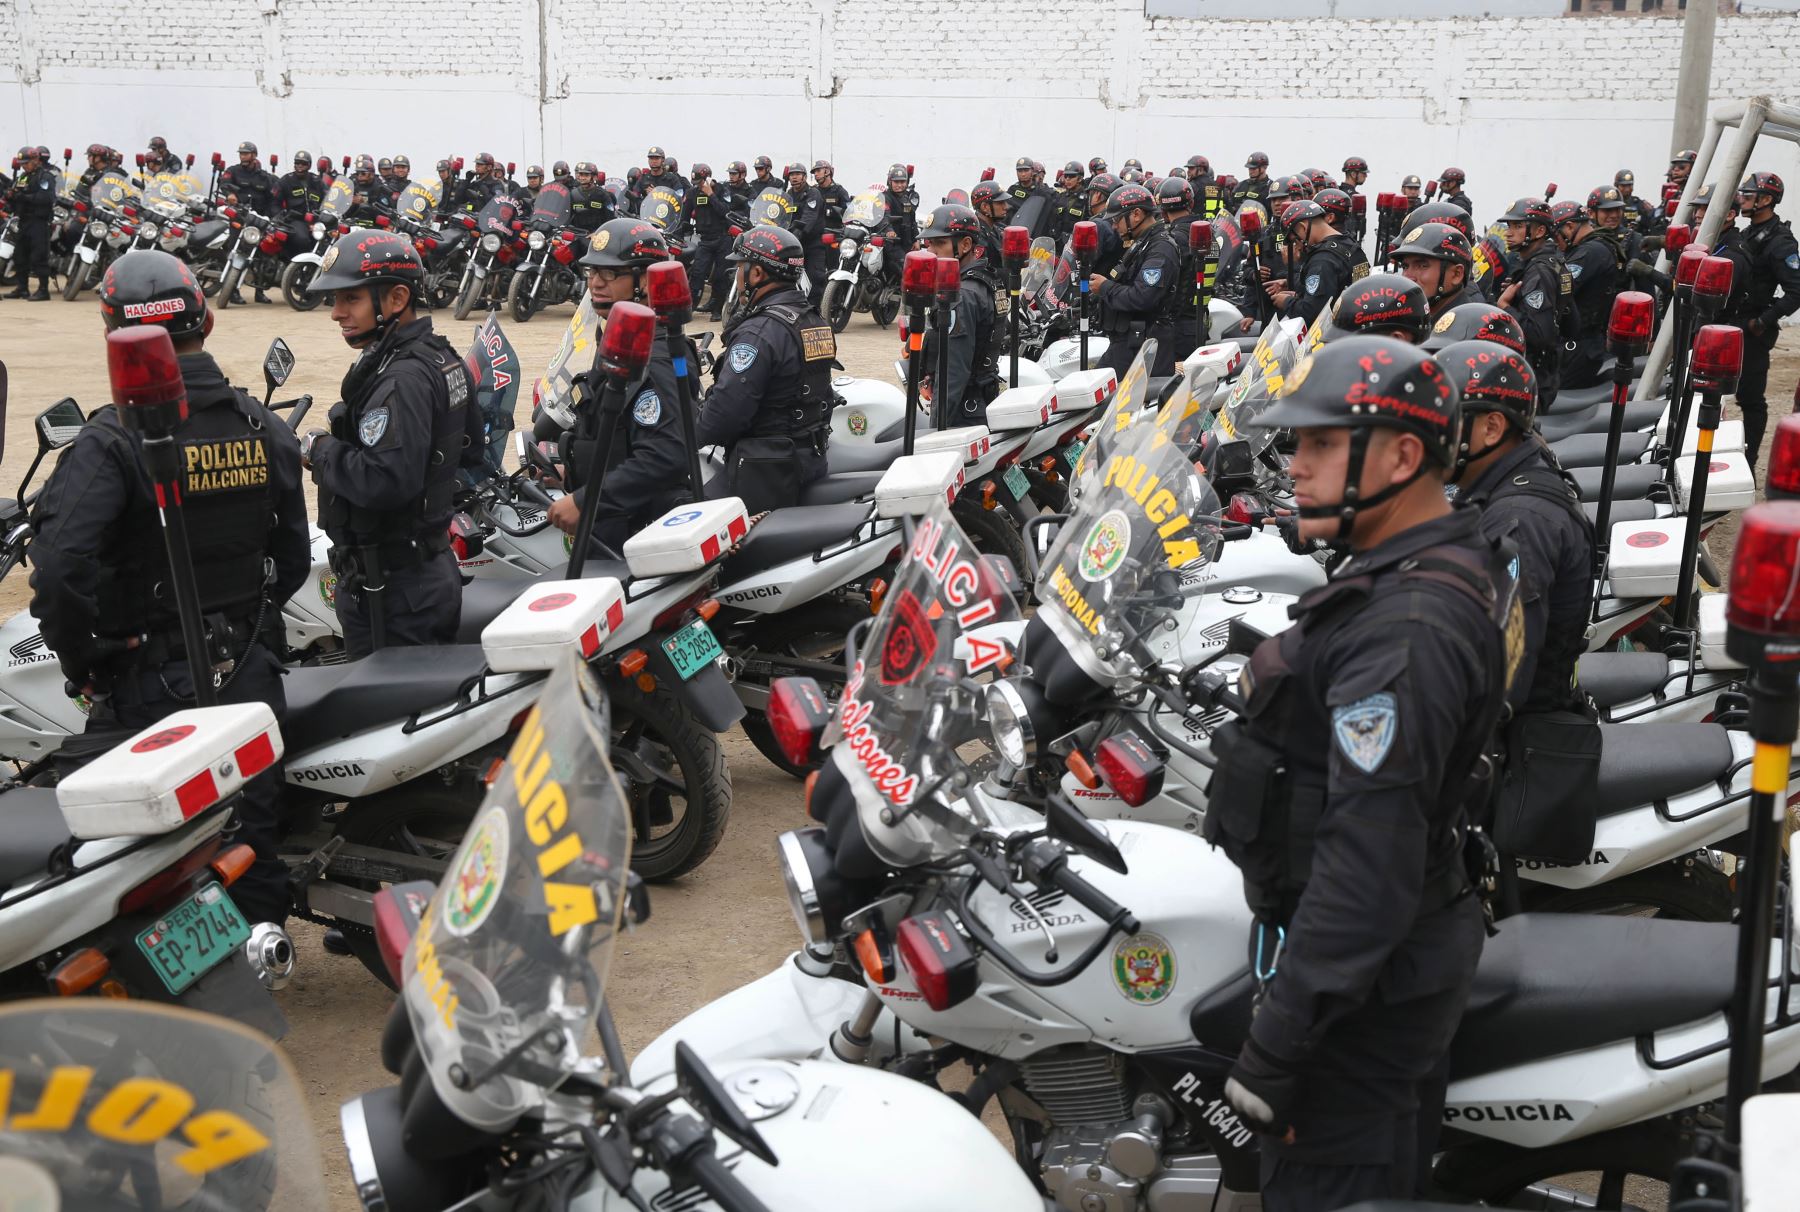 Fortalecen seguridad ciudadana en San Juan de Lurigancho con 400 policías y 200 motos desplegados por Región Policial Lima. ANDINA/Oscar Farje